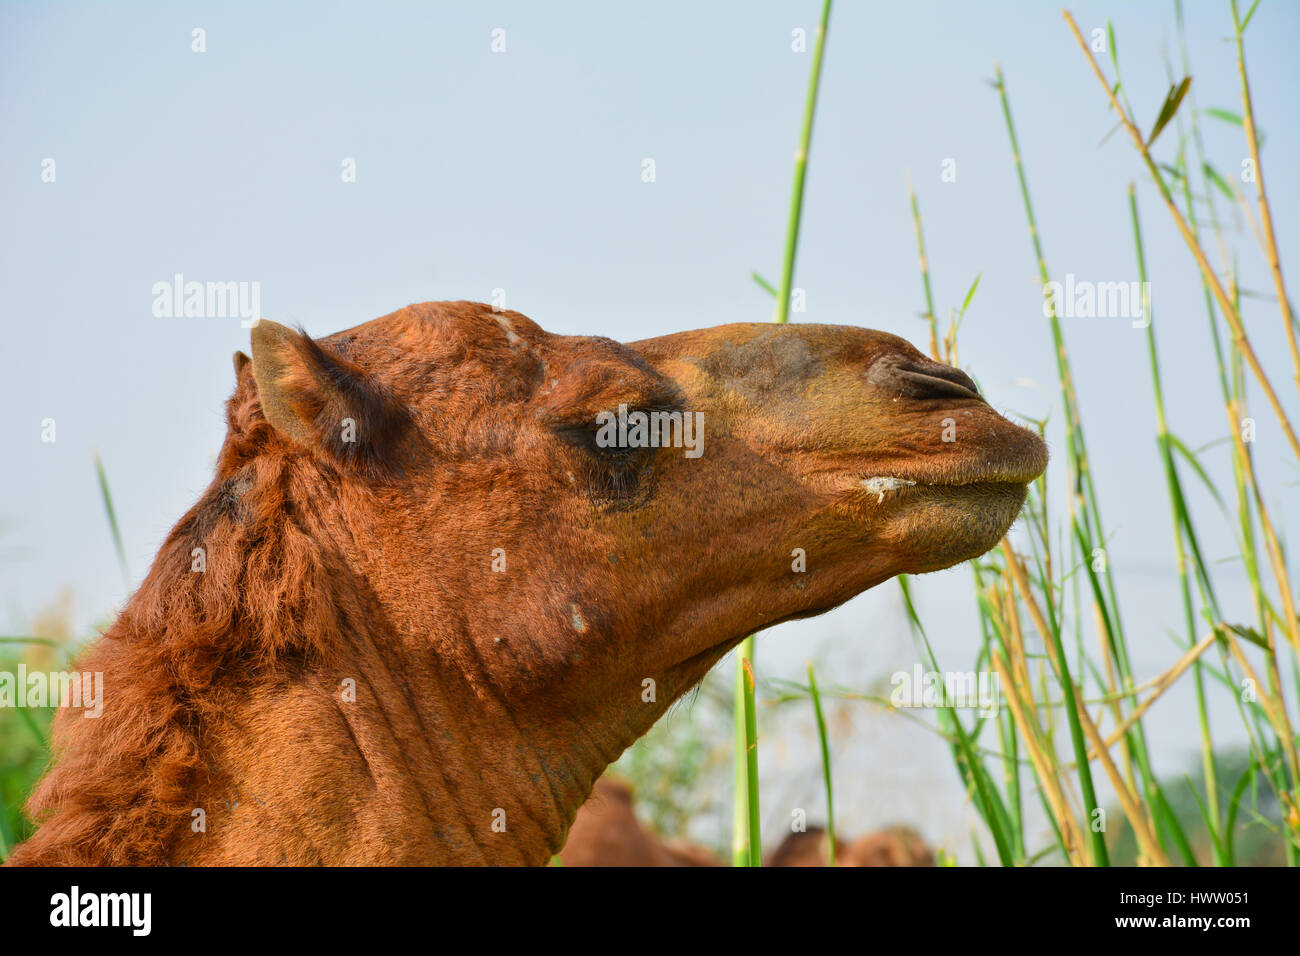 Camel eating grass closeup shot Stock Photo